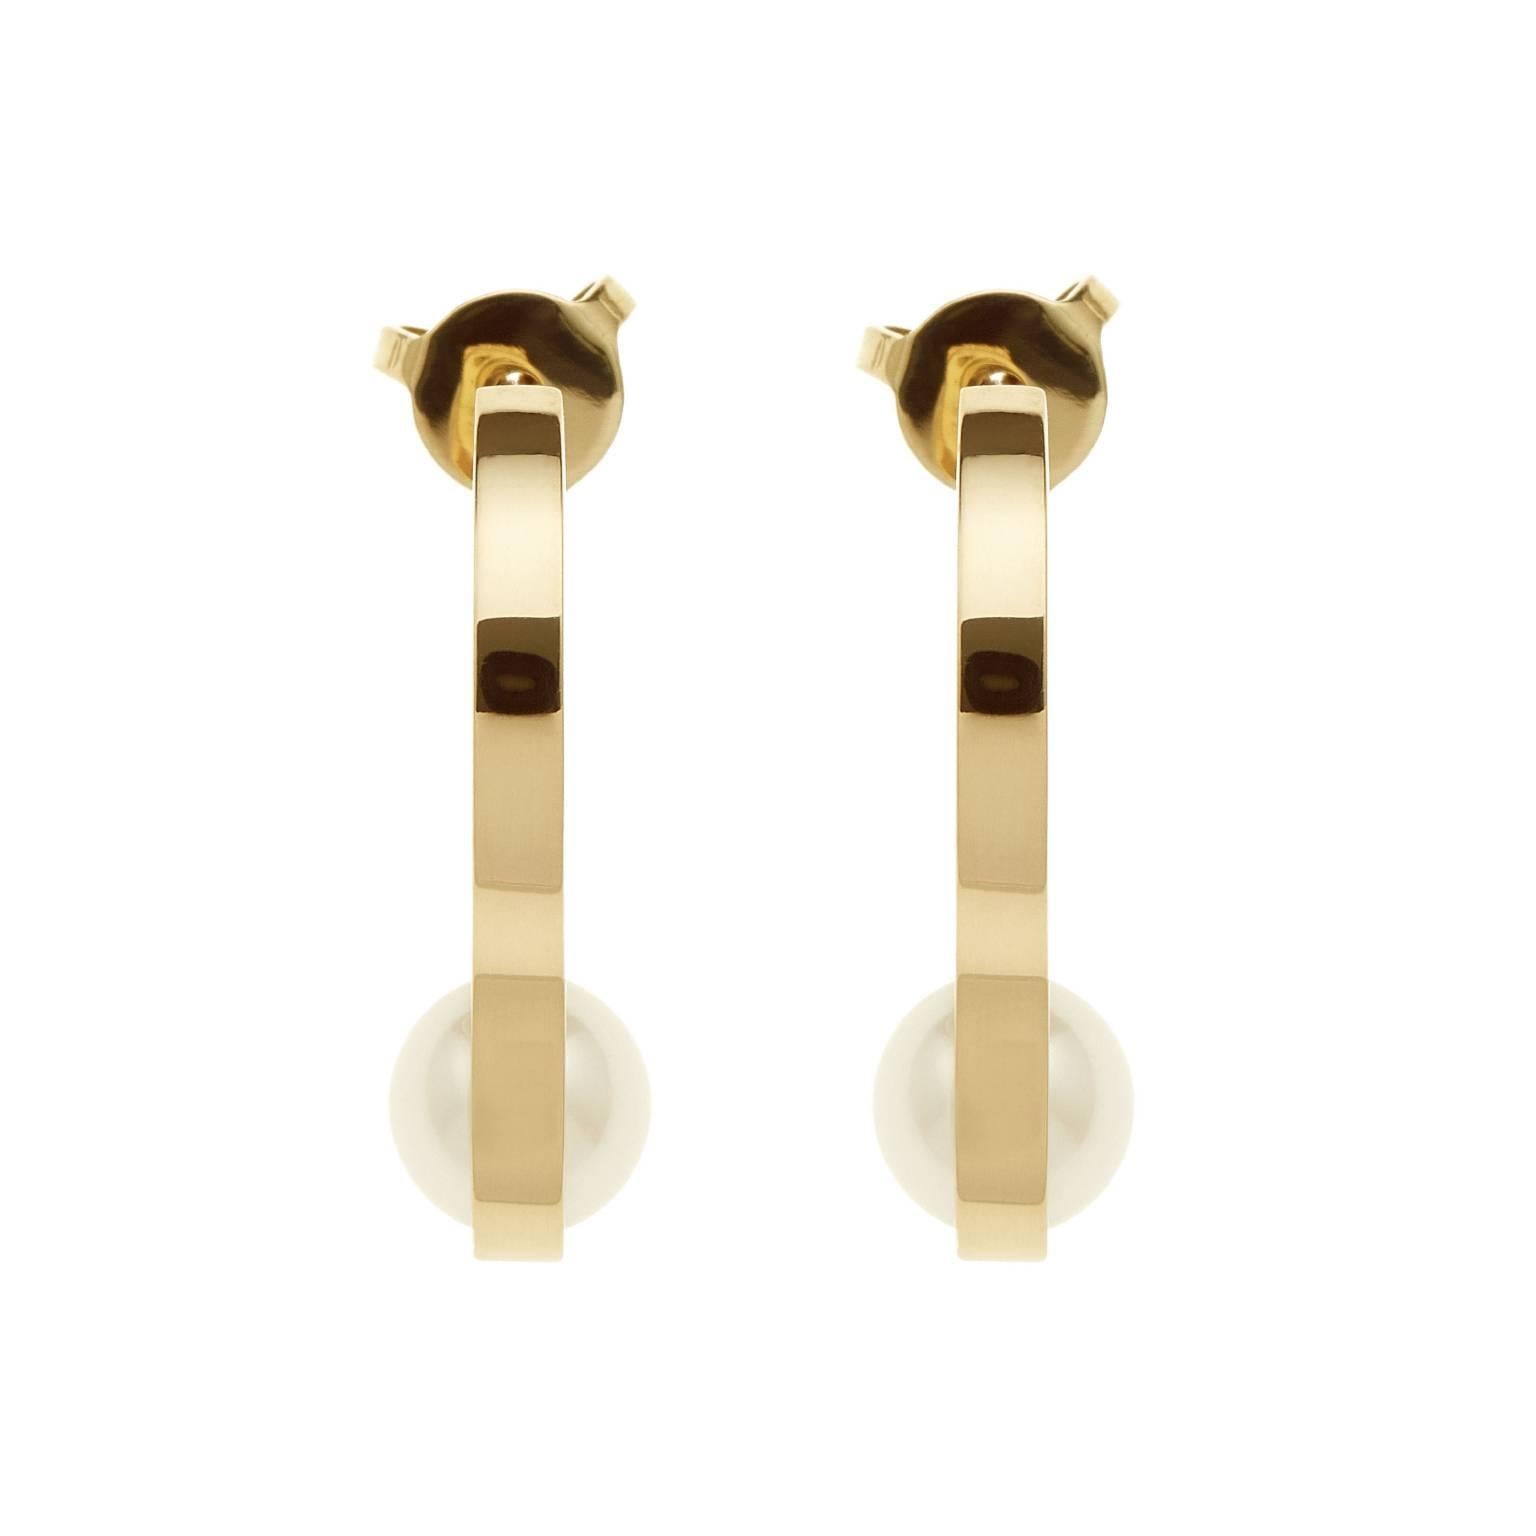 Réalisées à la main dans l'atelier de Nathalie Jean, les boucles d'oreilles Nakkar rendent hommage à la perle, symbole de divinité, de royauté et de luxe qui fascine et inspire depuis la nuit des temps. Une simple bande d'or 18 carats entoure les